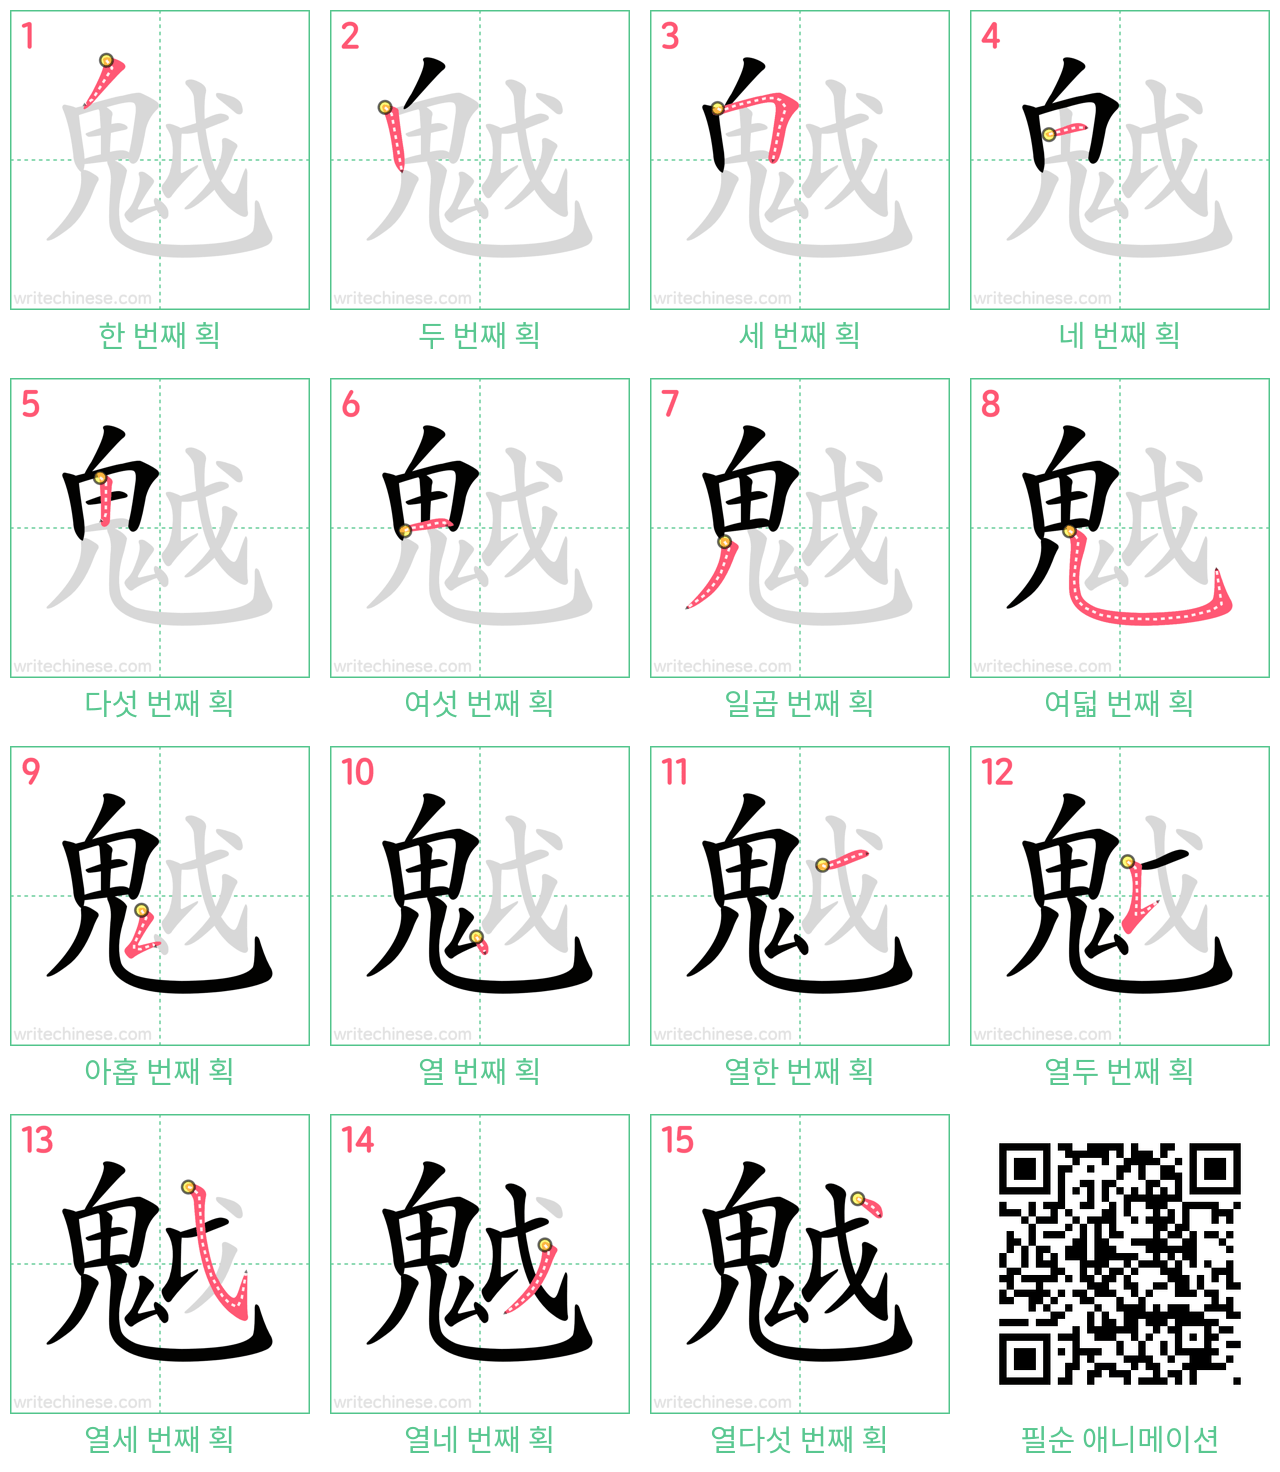 魆 step-by-step stroke order diagrams